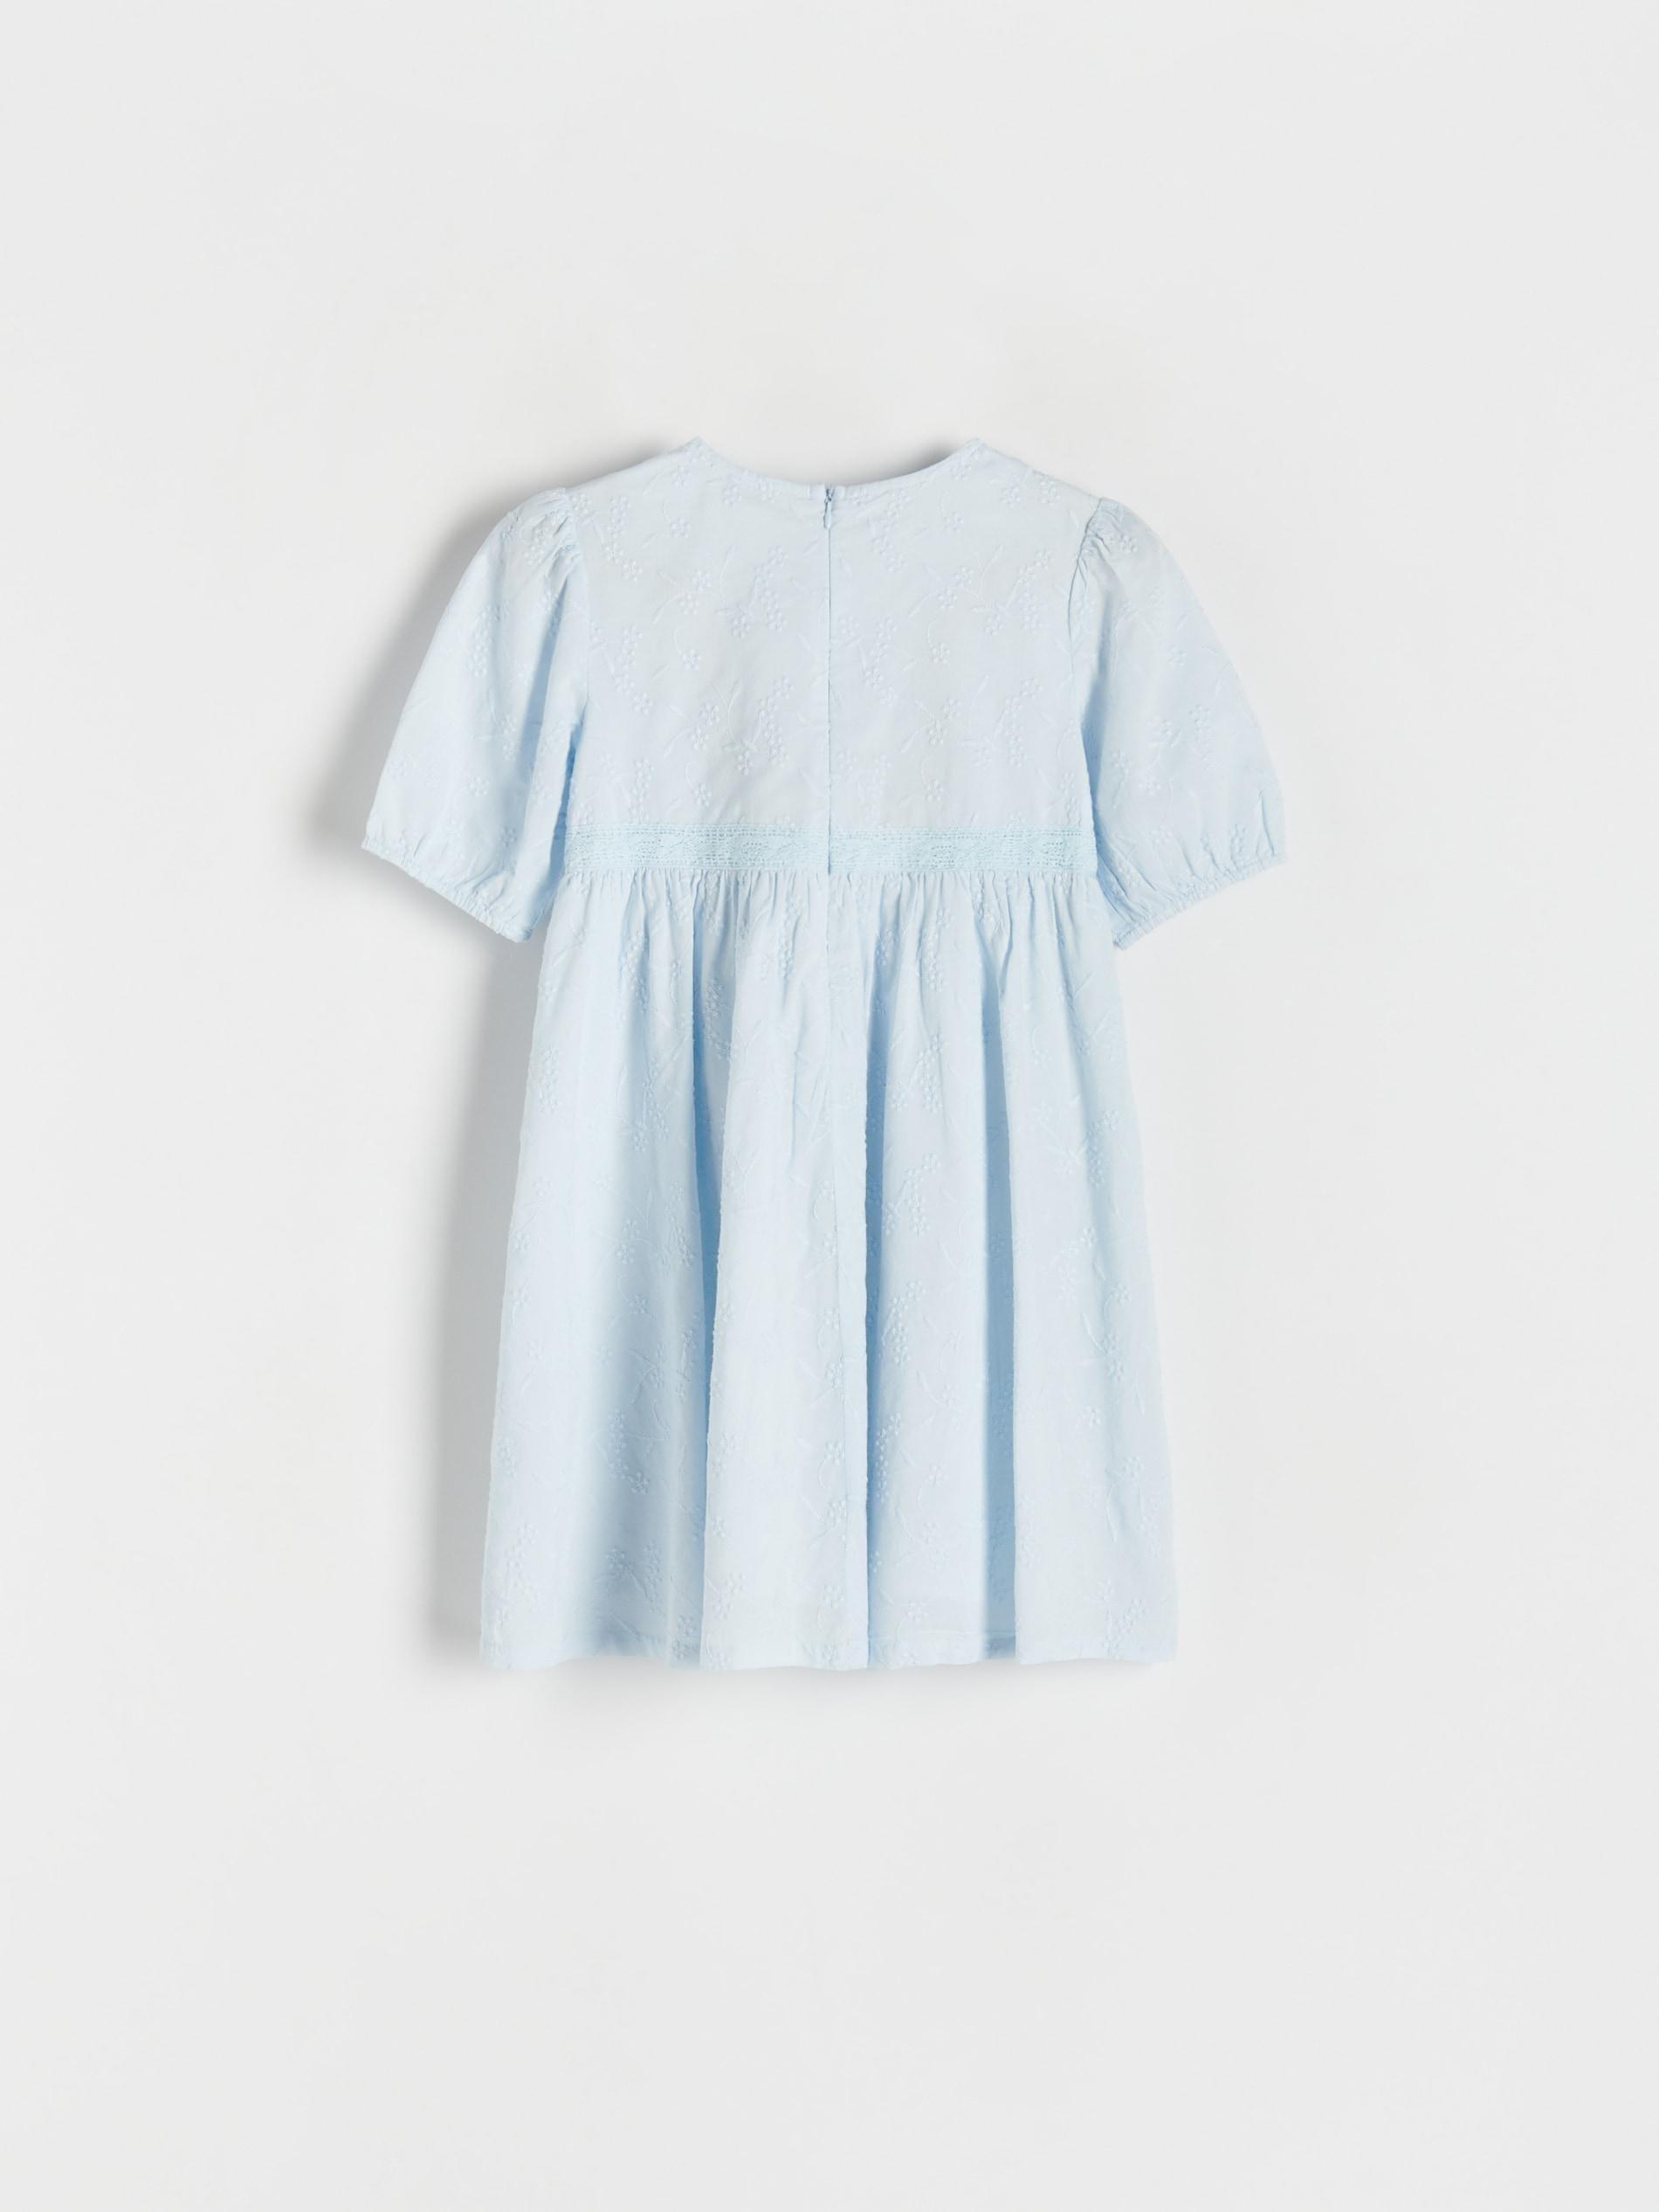 Reserved - Blue Floral Pattern Dress, Kids Girls